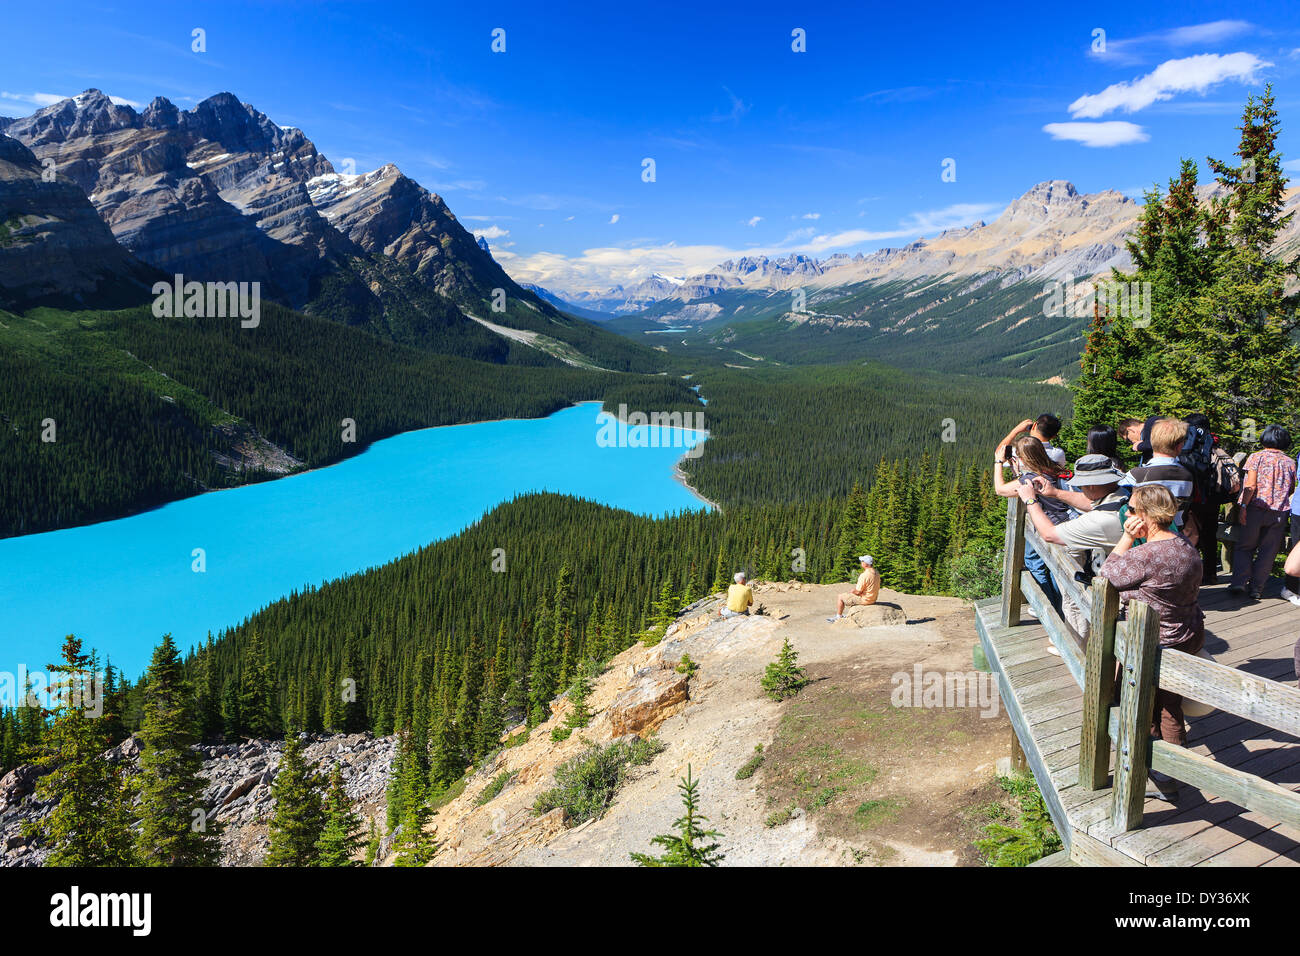 Surplombant le lac Peyto Banff dans N.P, Alberta, Canada Banque D'Images